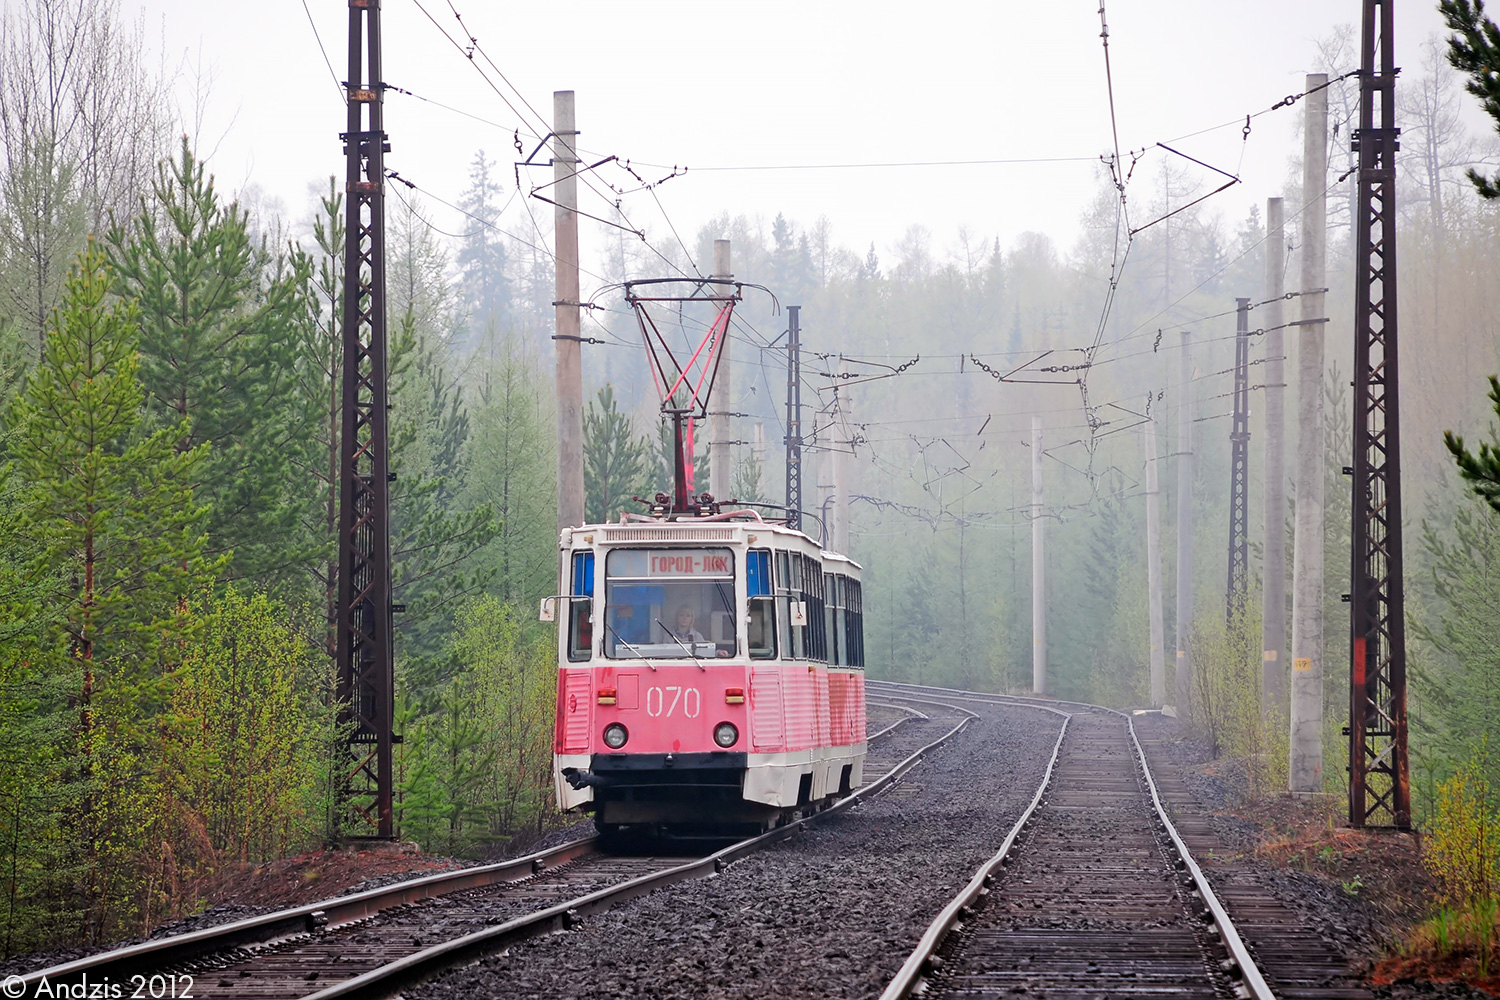 Uszty-Ilimszk, 71-605 (KTM-5M3) — 070